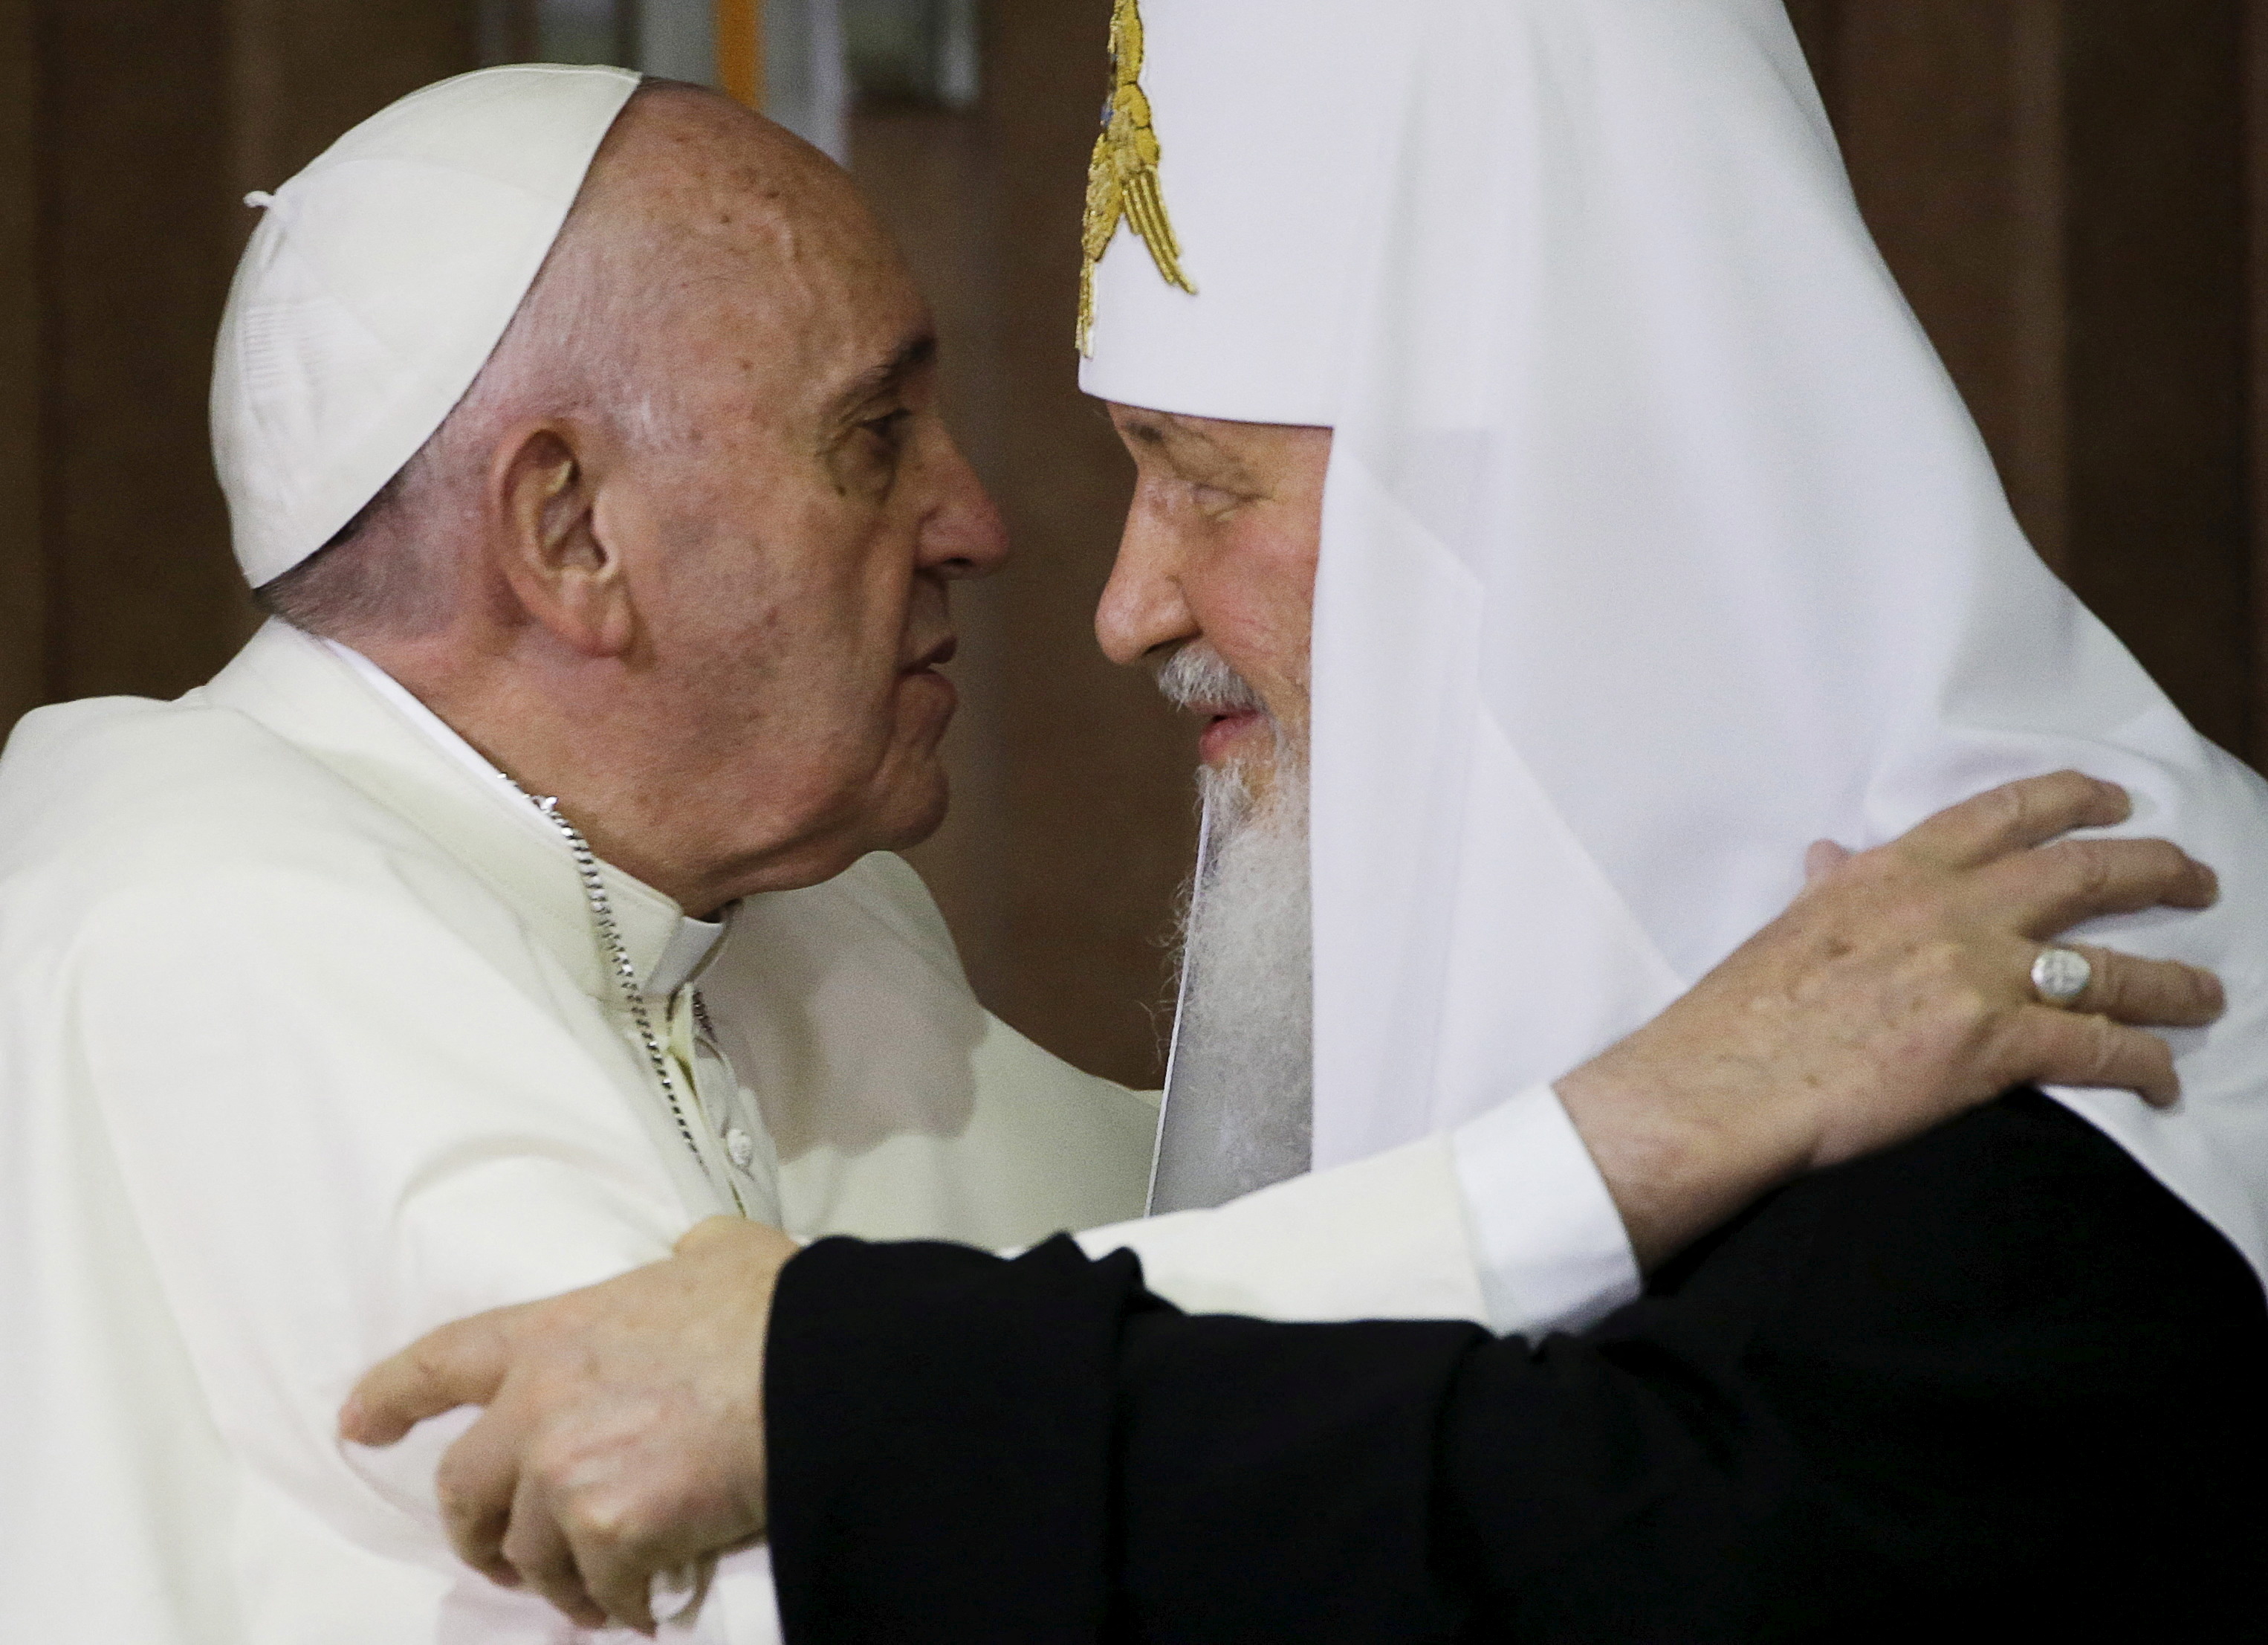 El encuentro del papa Francisco (izquierda) con el patriarca ortodoxo ruso Kirill en La Habana, el 12 de febrero de 2016 (REUTERS/Gregorio Borgia/Pool/Archivo)